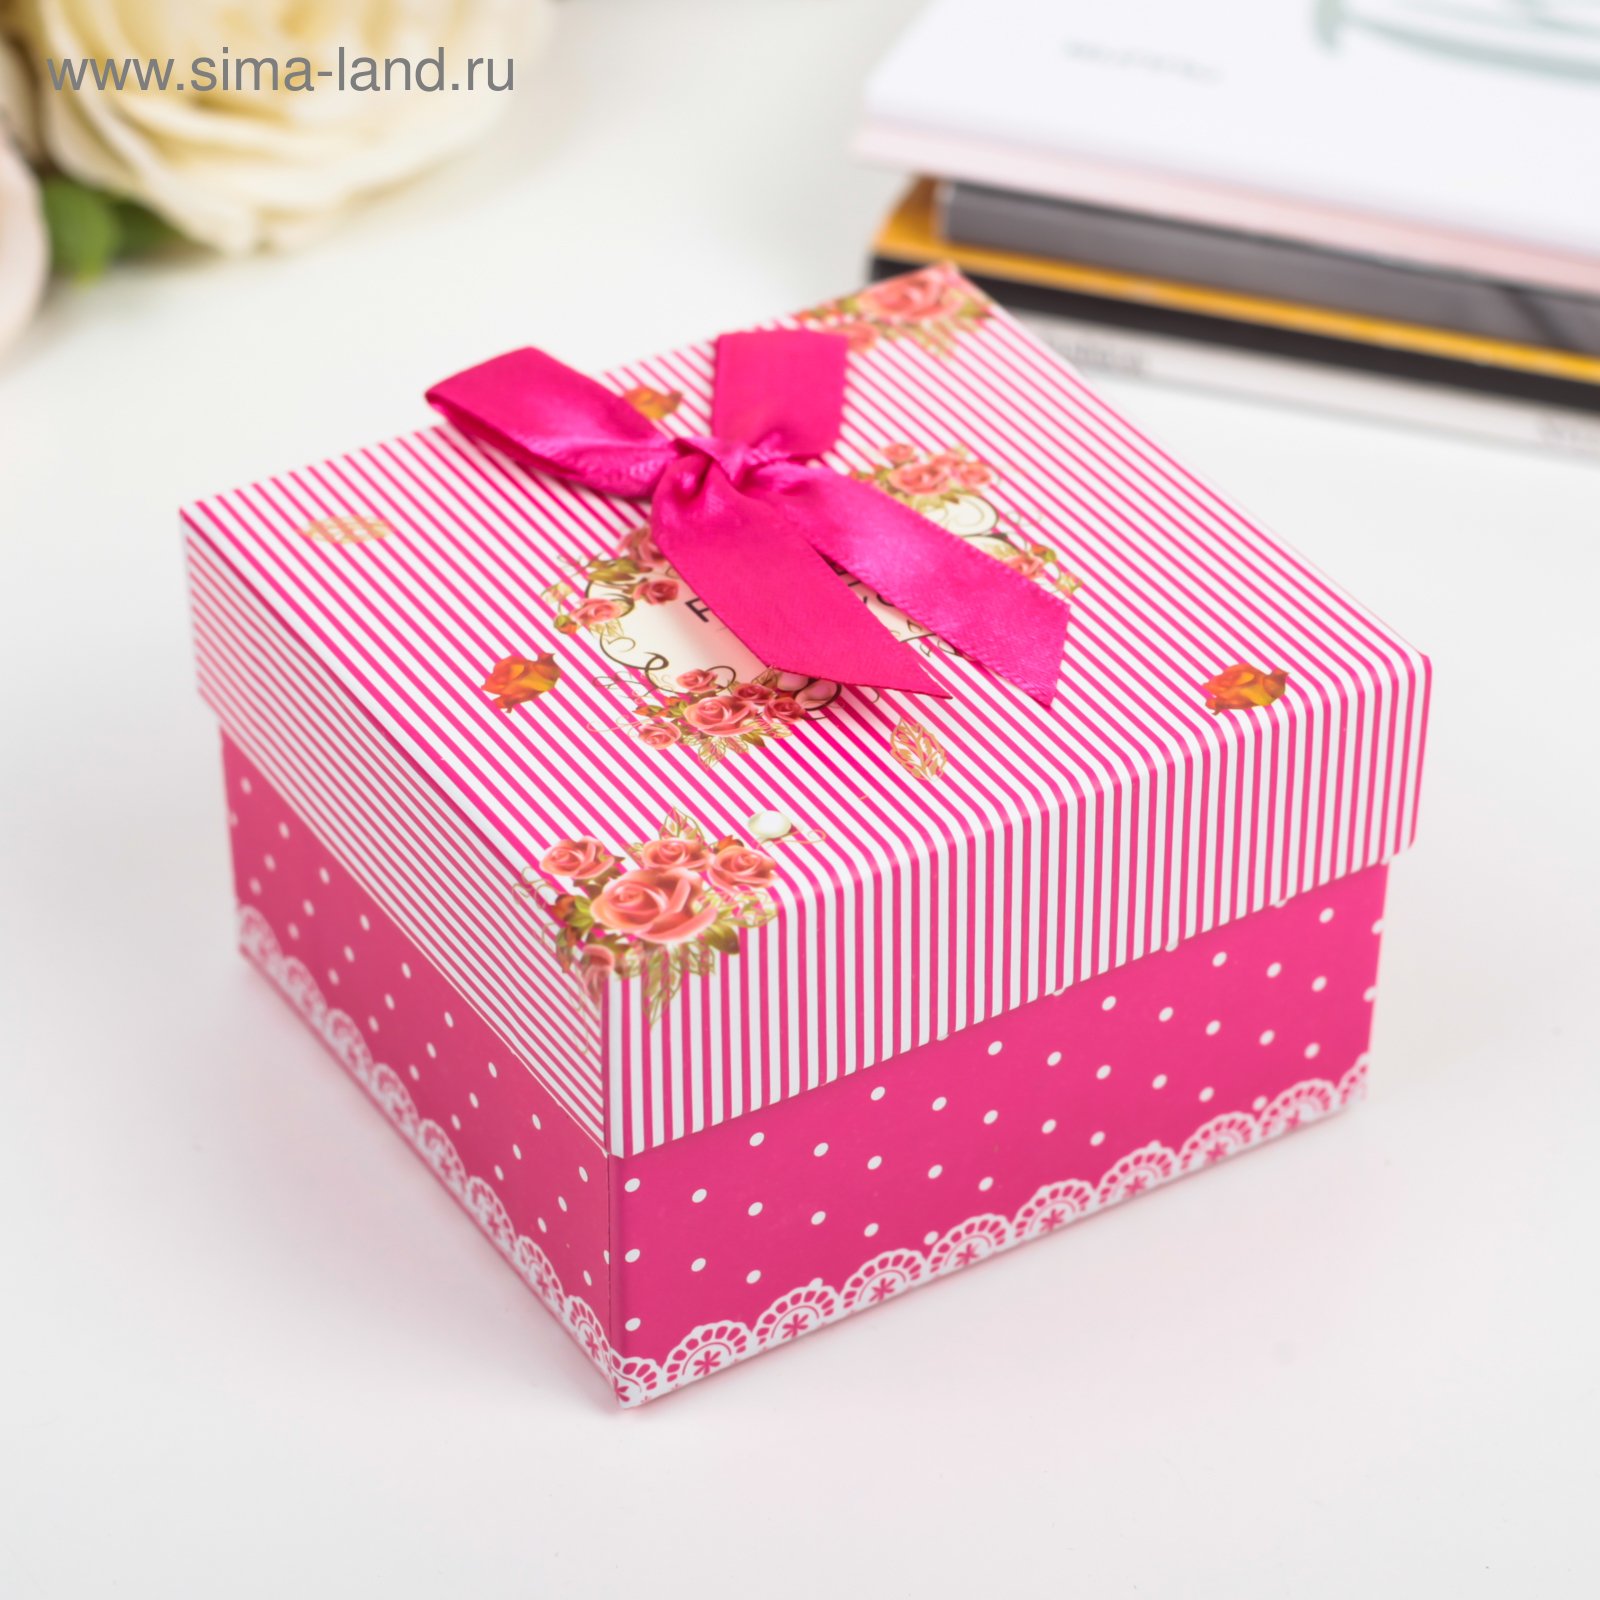 Формы подарков. Коробка для подарка. Красивые подарочные коробки. Небольшие коробки для подарков. Красивая коробка для подарка.